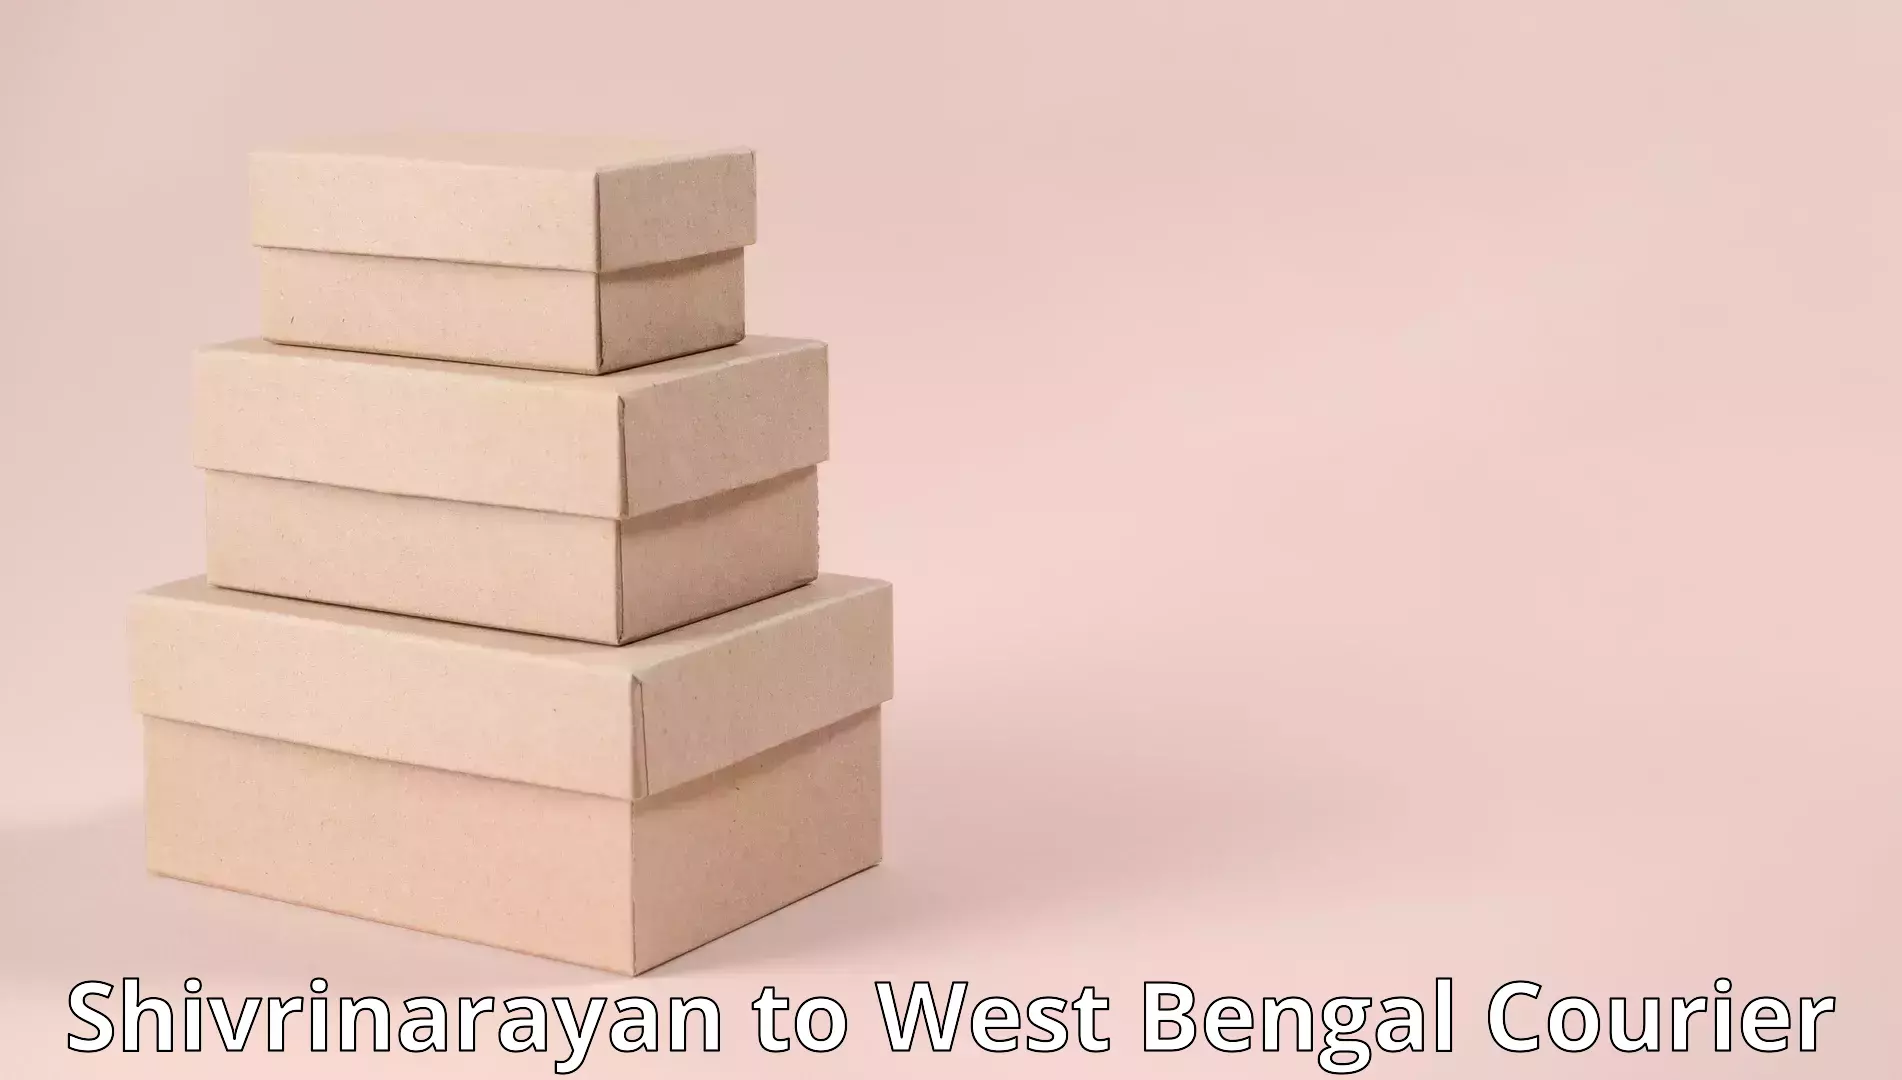 Furniture movers and packers Shivrinarayan to Kolkata Port